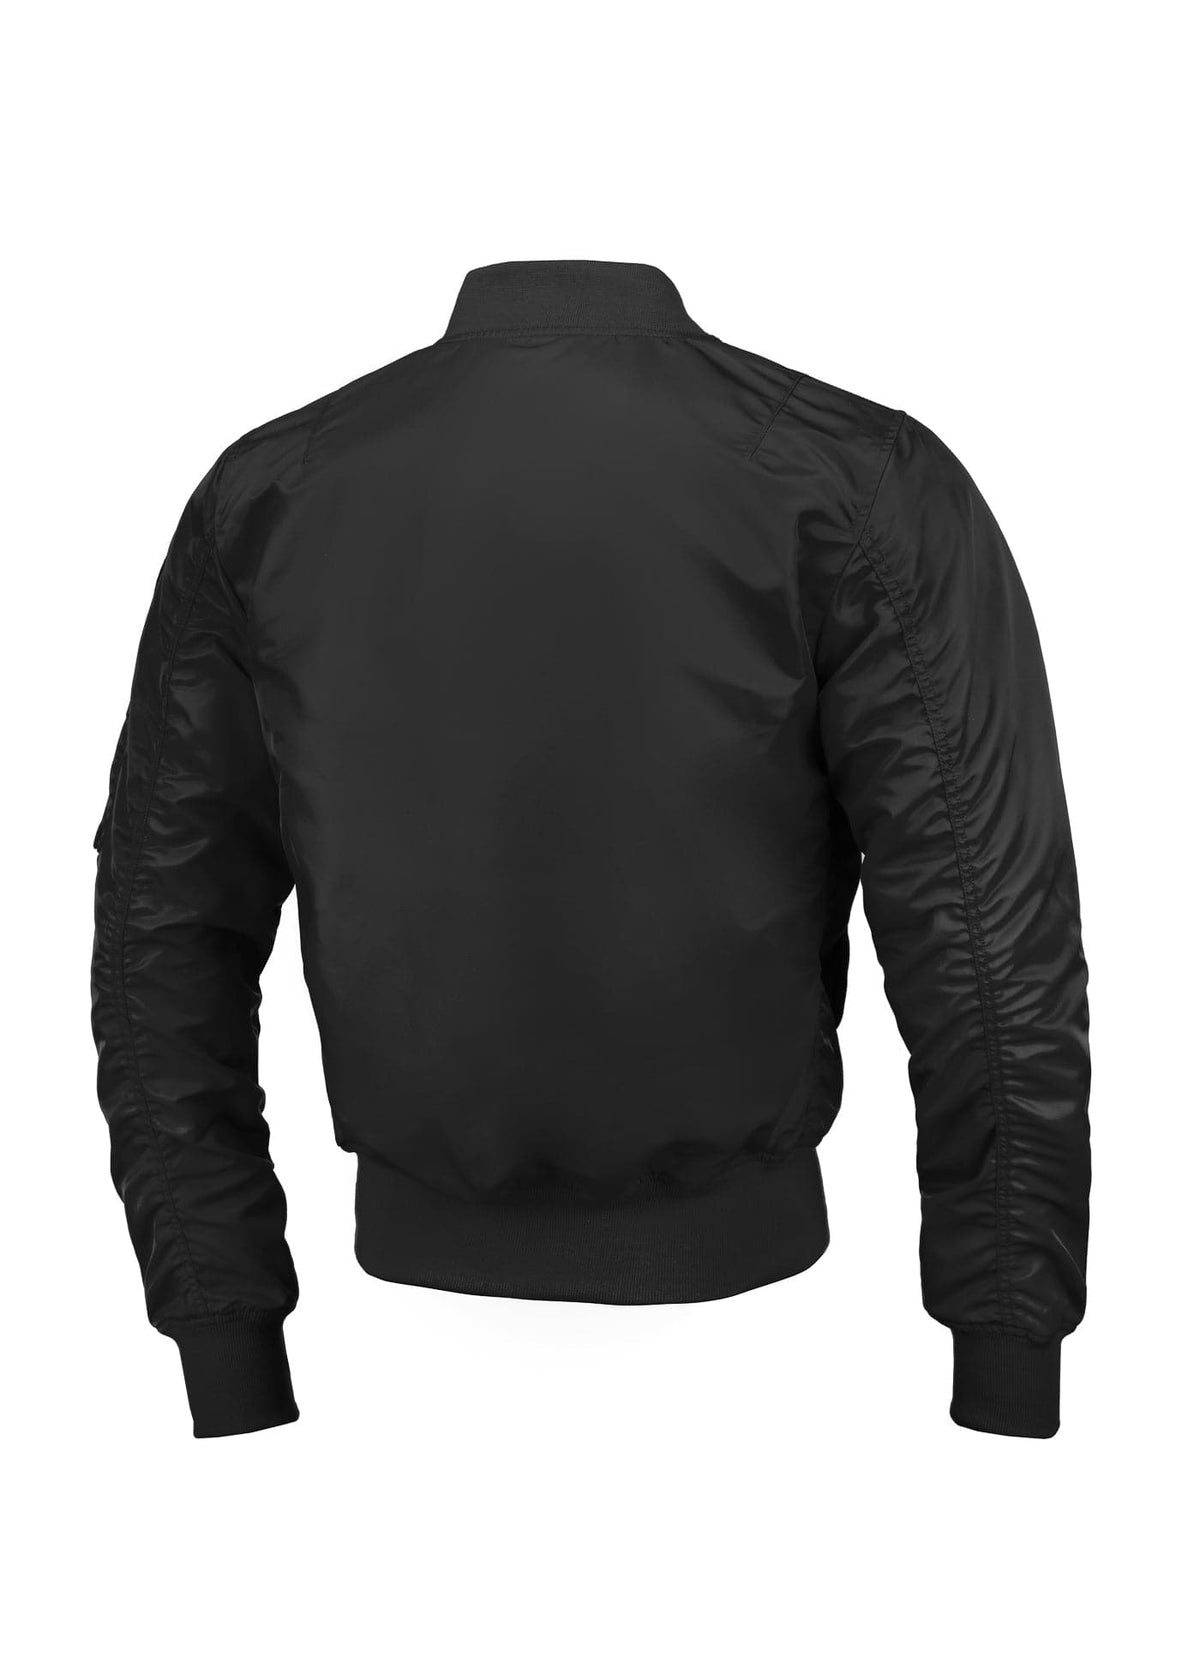 MA1 LOGO Black Jacket